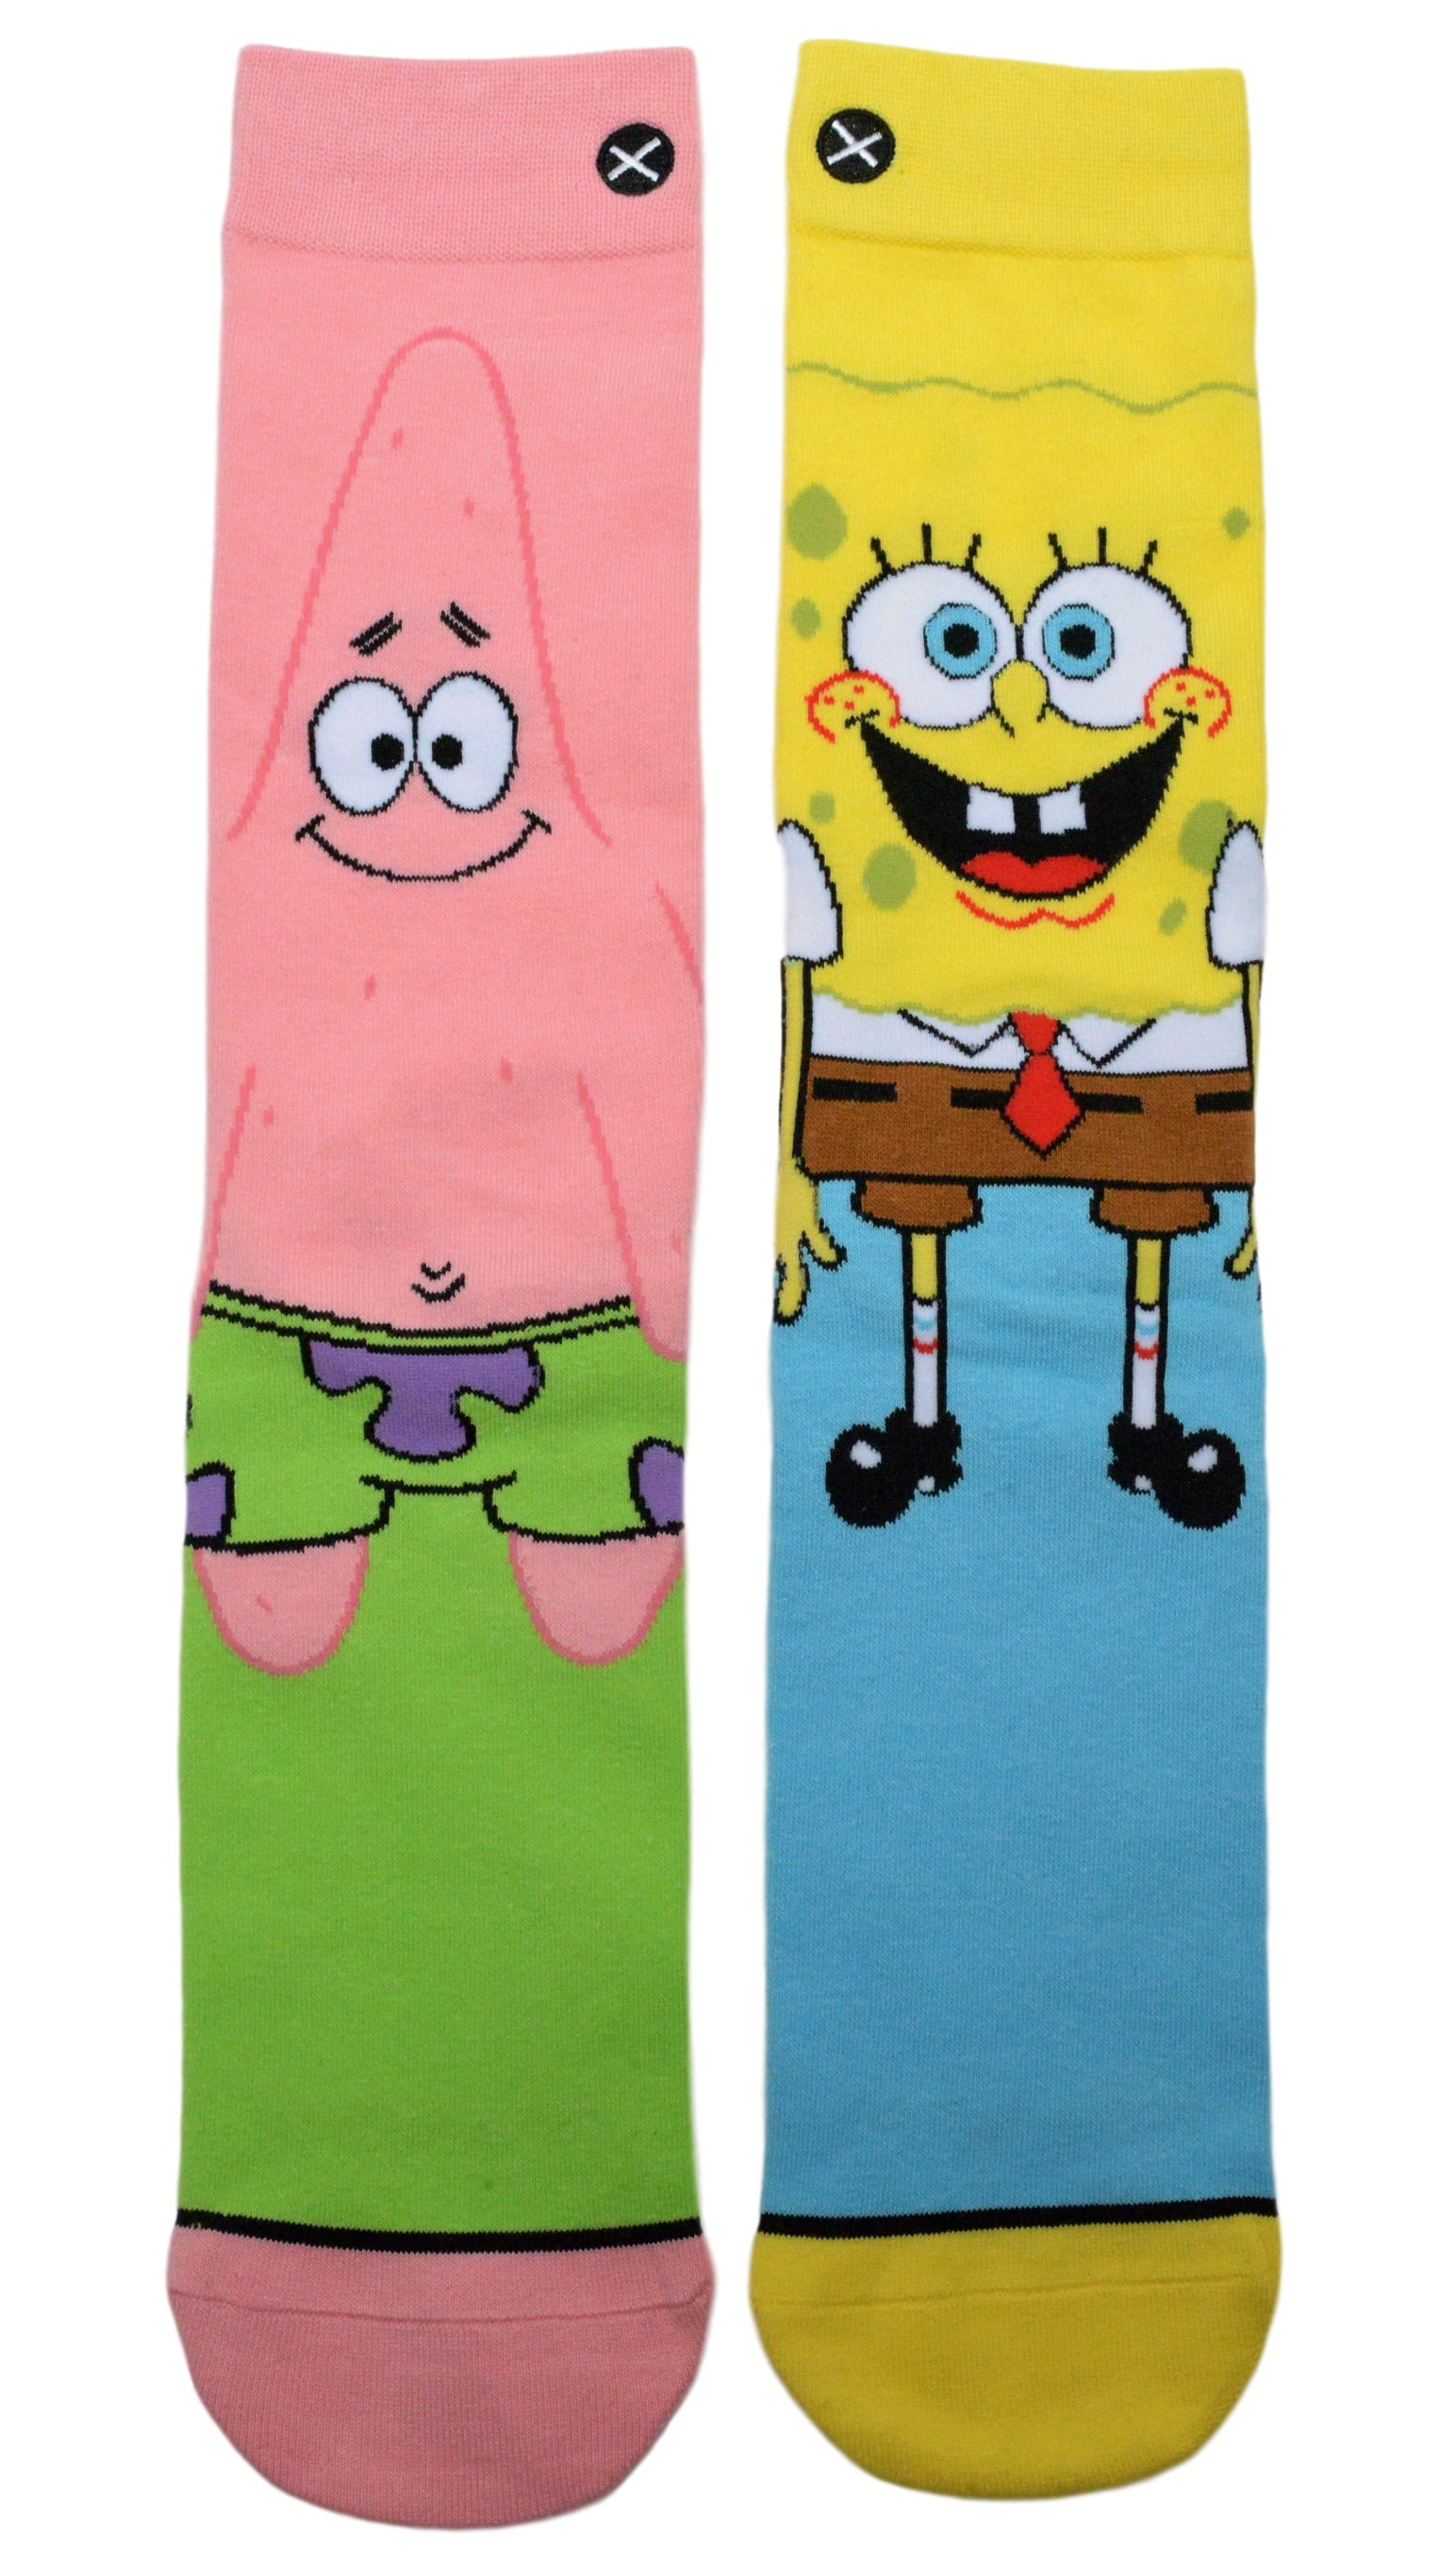 Kids Socks Ages 7-10: Patrick Star Stripes - From SpongeBob – Mike's Wild  Crazy Socks